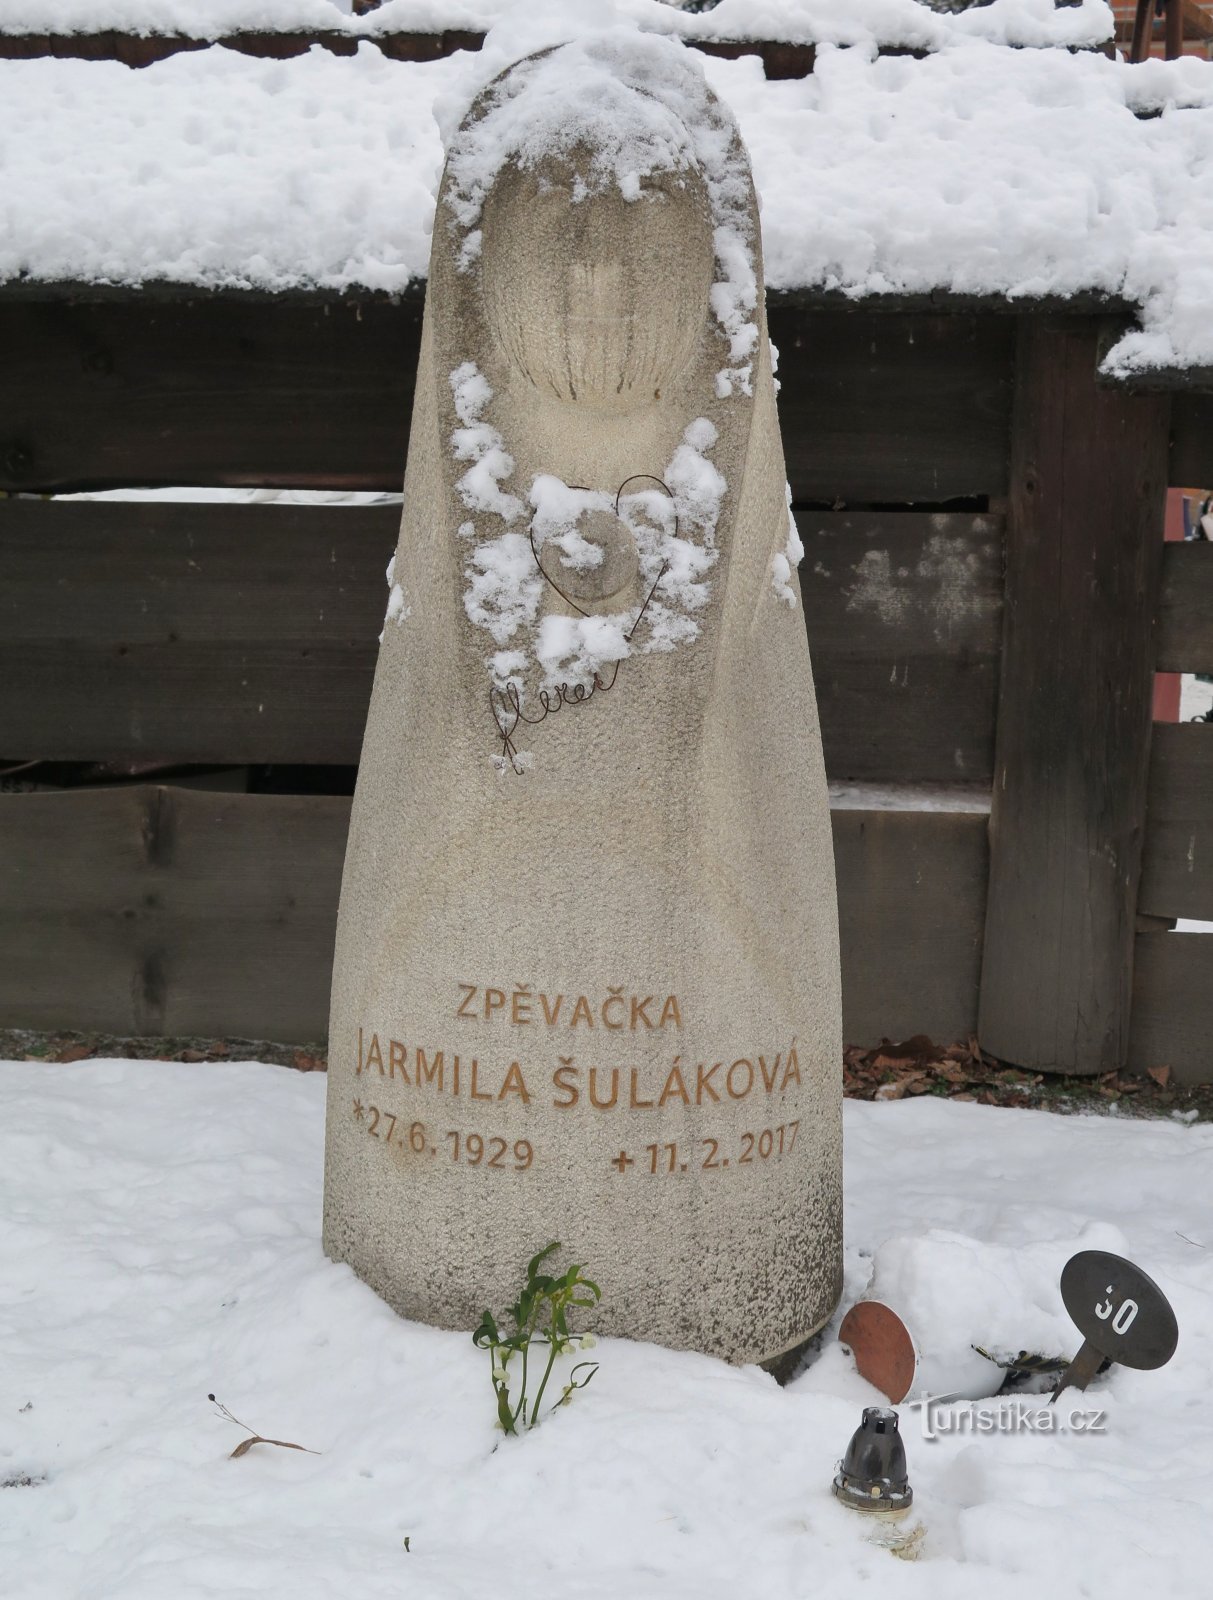 Рожнов під Радгоштем – меморіальна могила волоської королеви Ярміли Шулакової